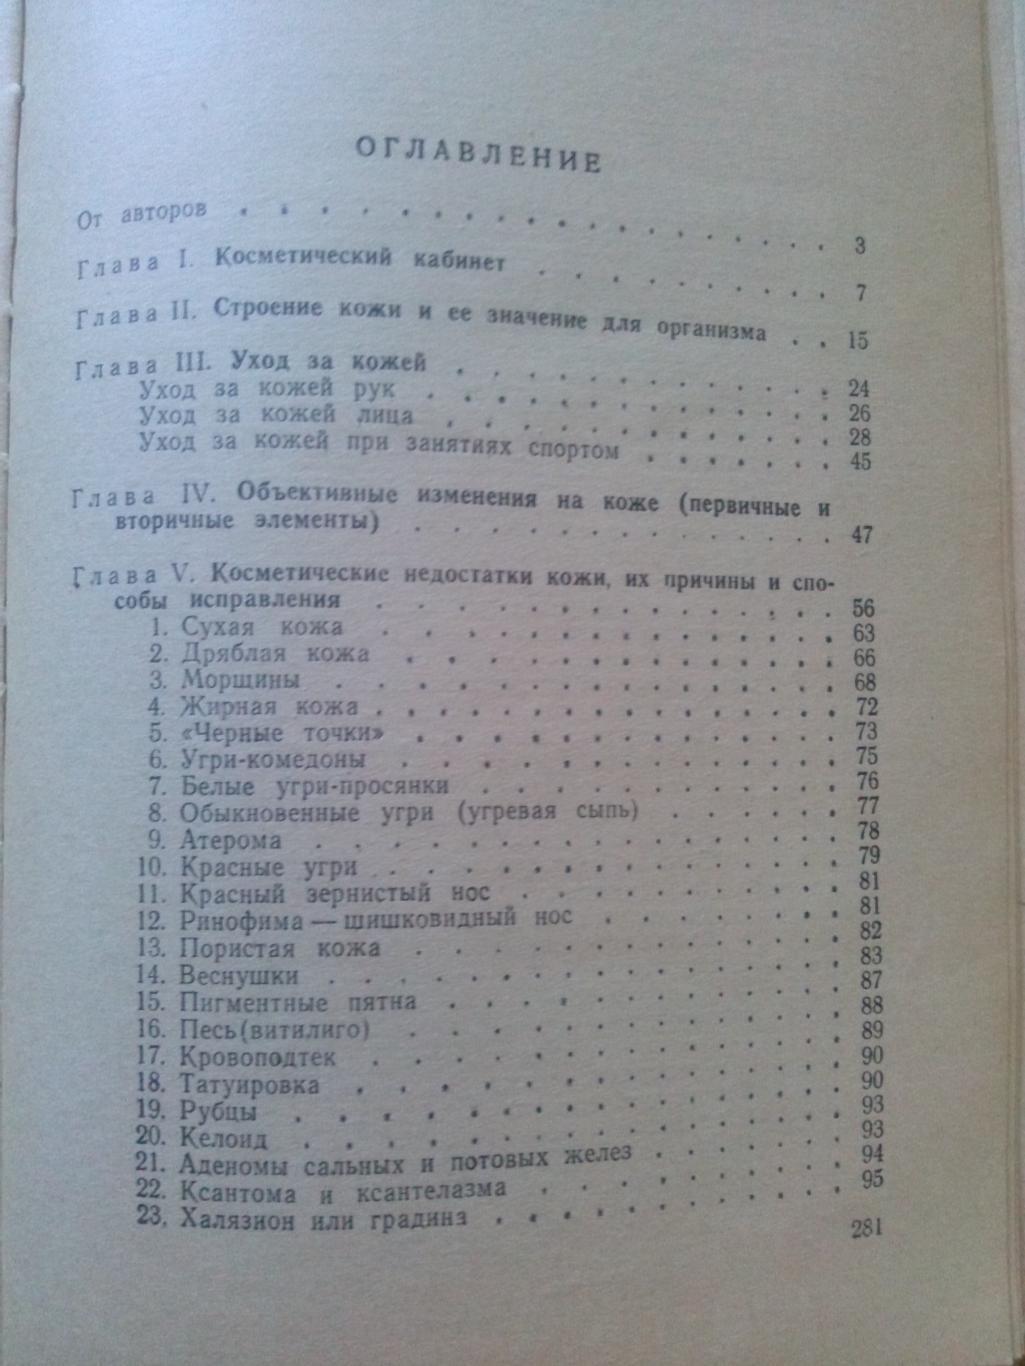 Д.Ласс , М. Поликарпова - Уход за кожей лица 1961 г. (Косметология , косметика 2